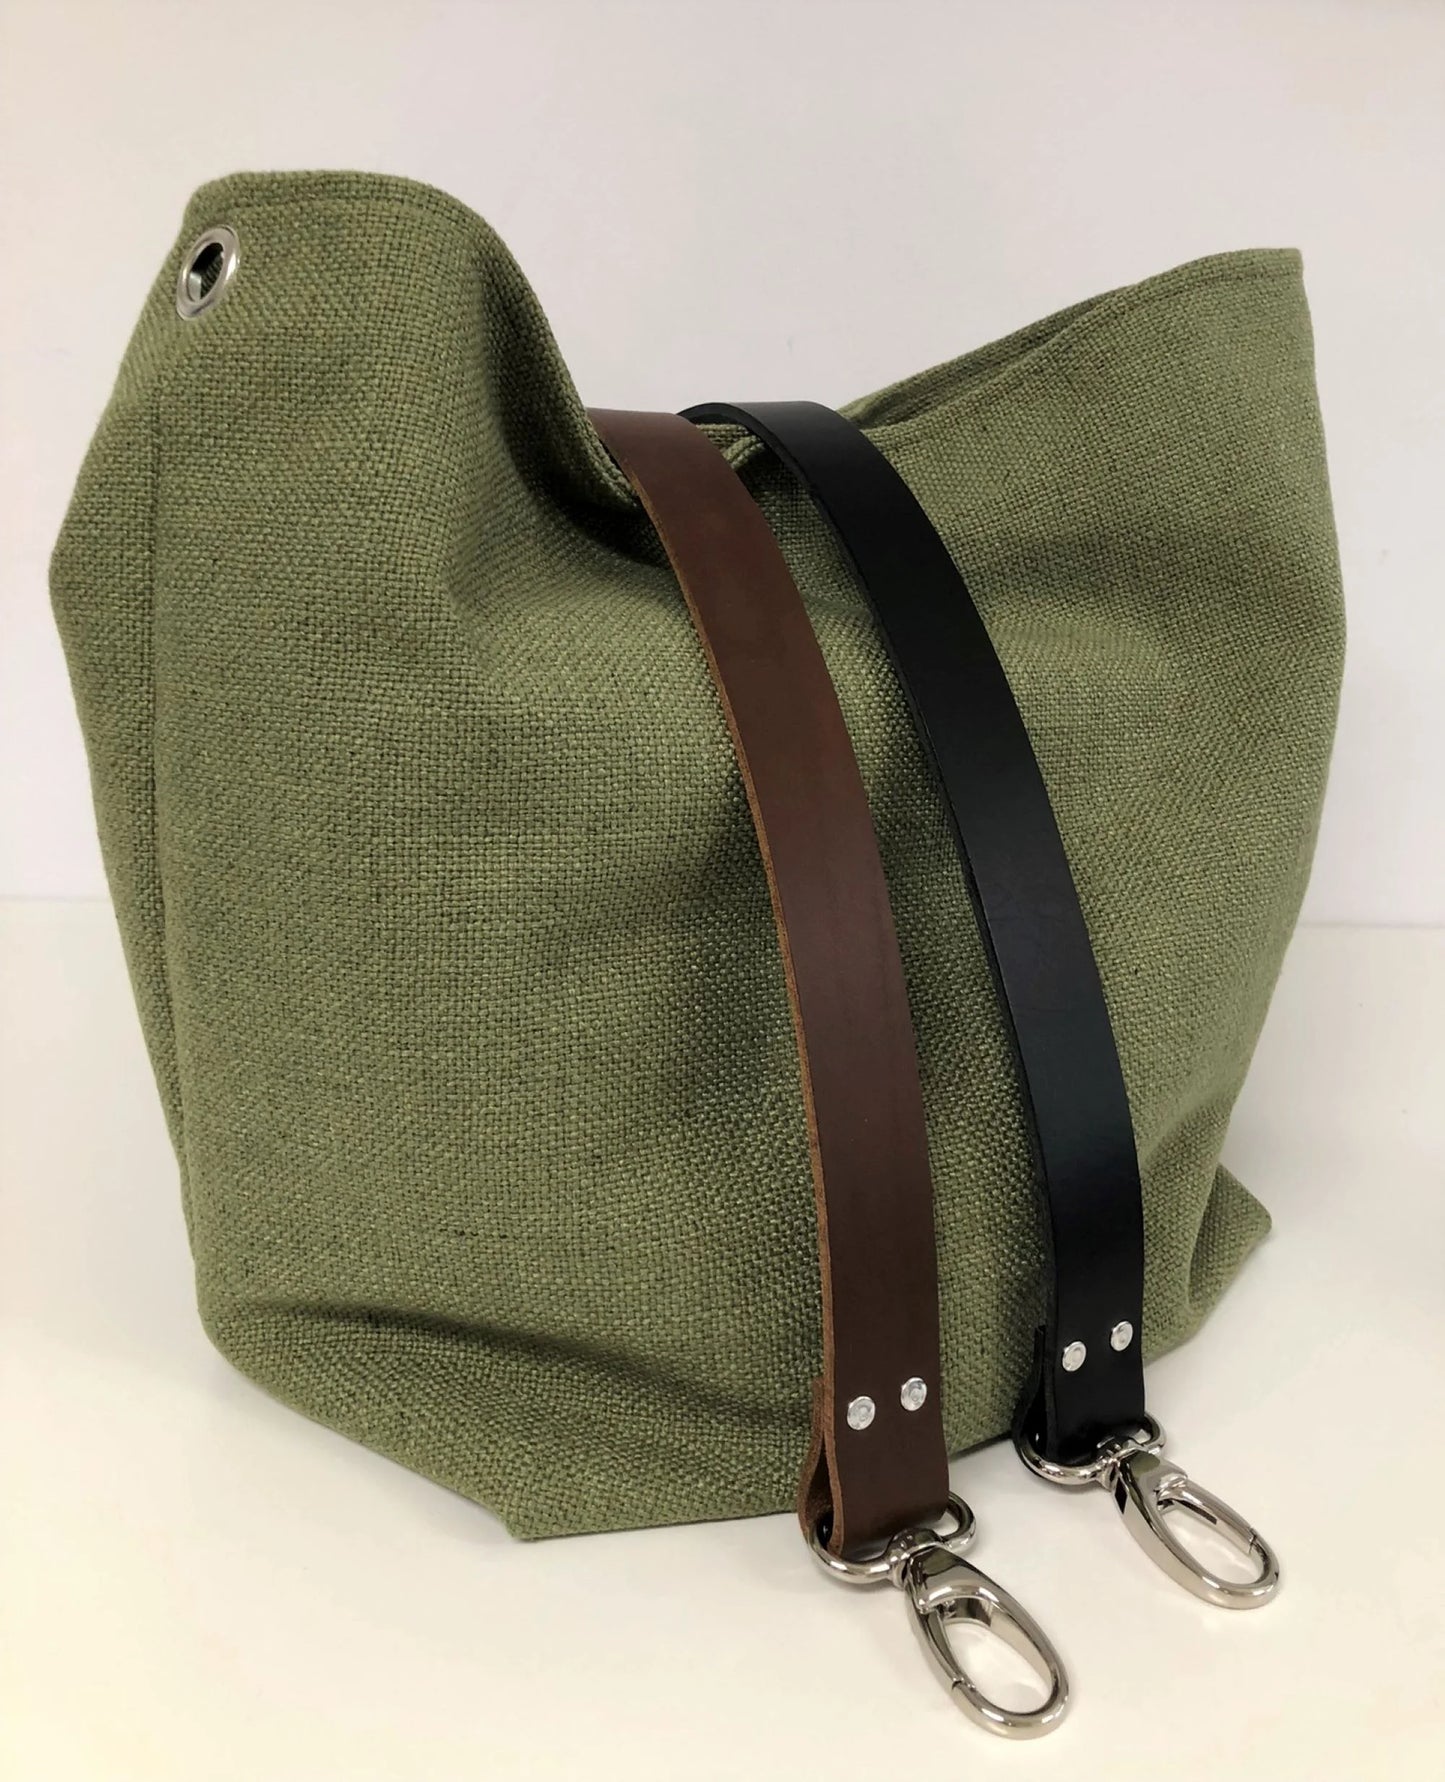 Le sac hobo en lin vert kaki et son anse en cuir marron ou noir,  amovible